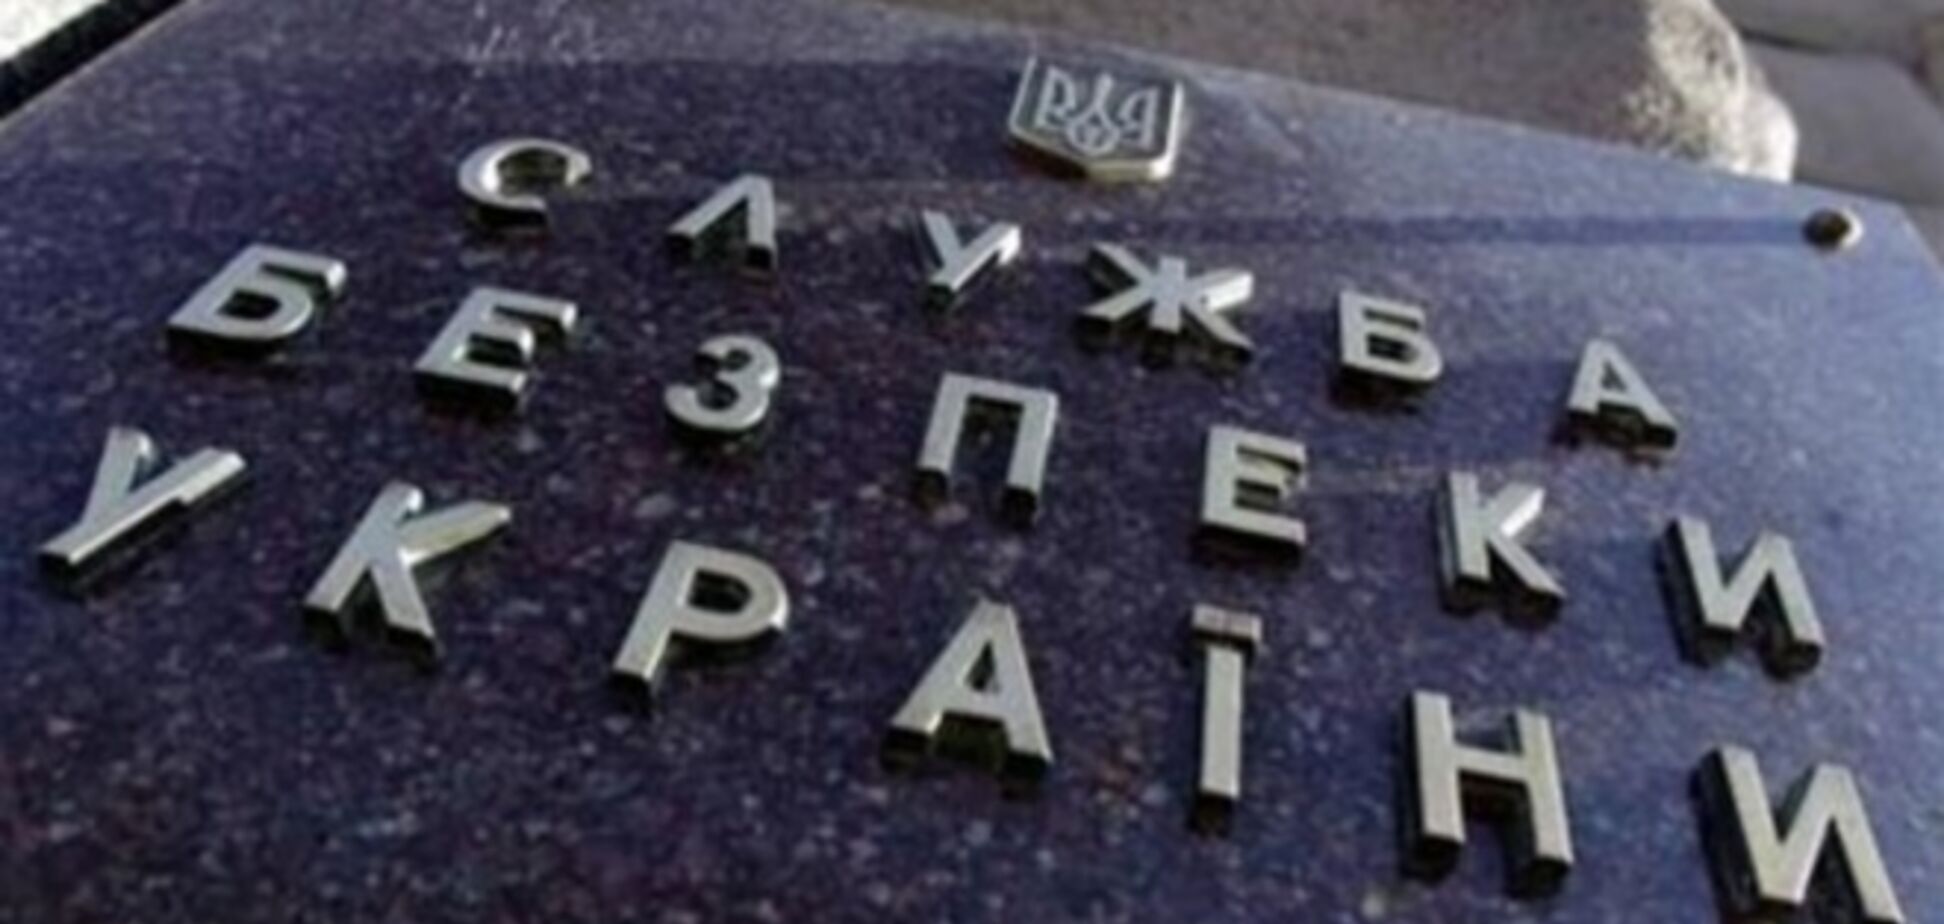 СБУ сообщила об угрозе жизни Порошенко и Тимошенко - СМИ